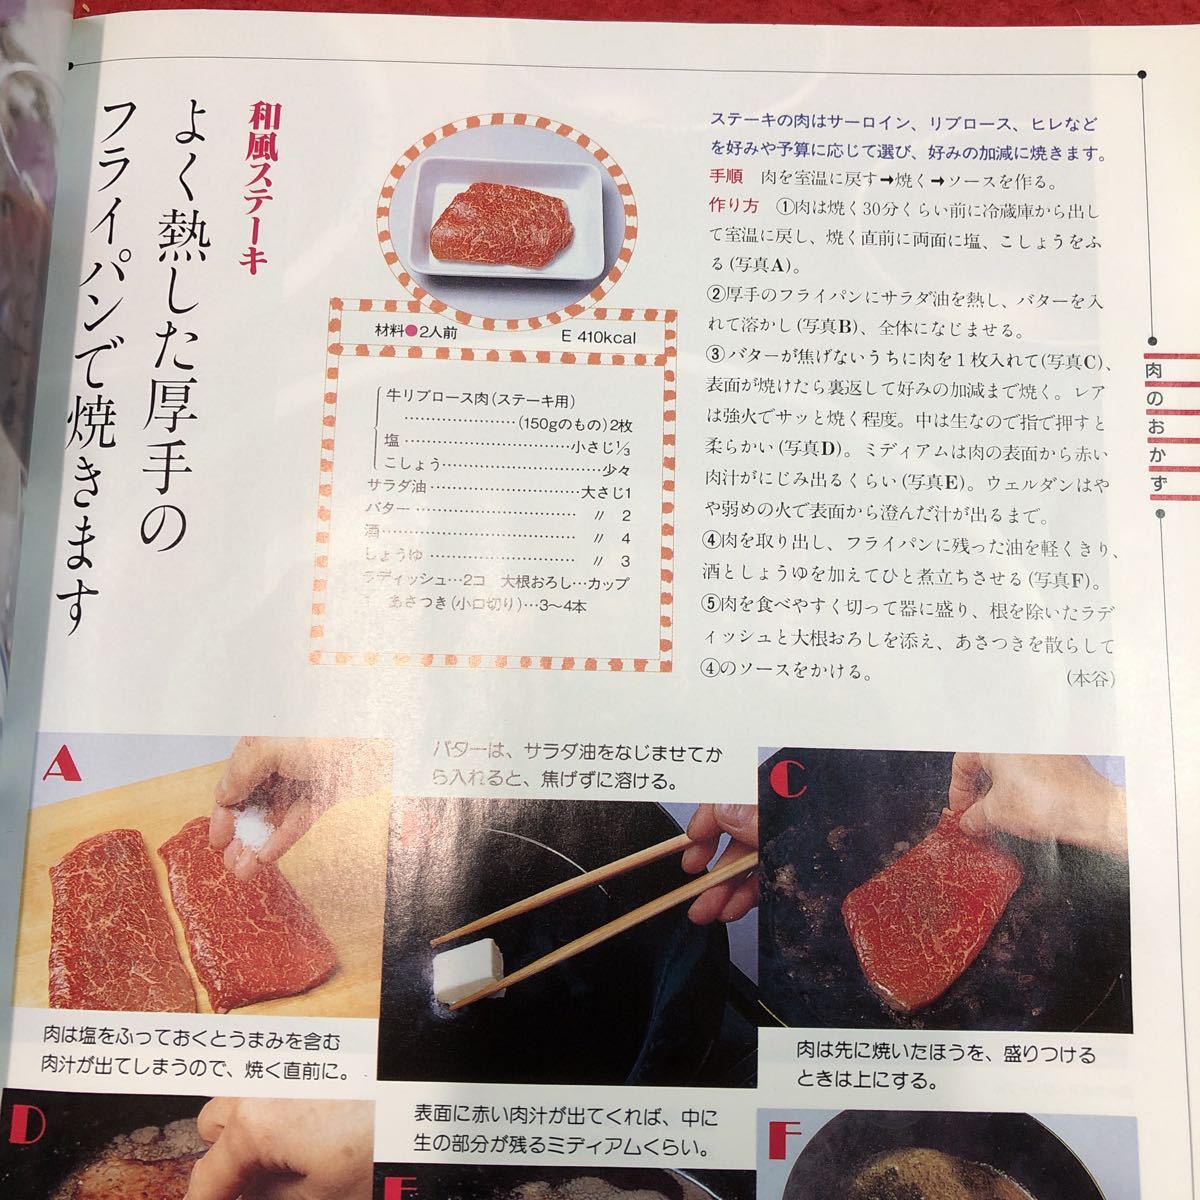 S6i-074 別冊 NHK きょうの料理 1995年7月15日 発行 日本放送出版協会 雑誌 料理 レシピ ステーキ 肉じゃが 刺身 塩焼き 卵焼き ちらし寿司_画像6